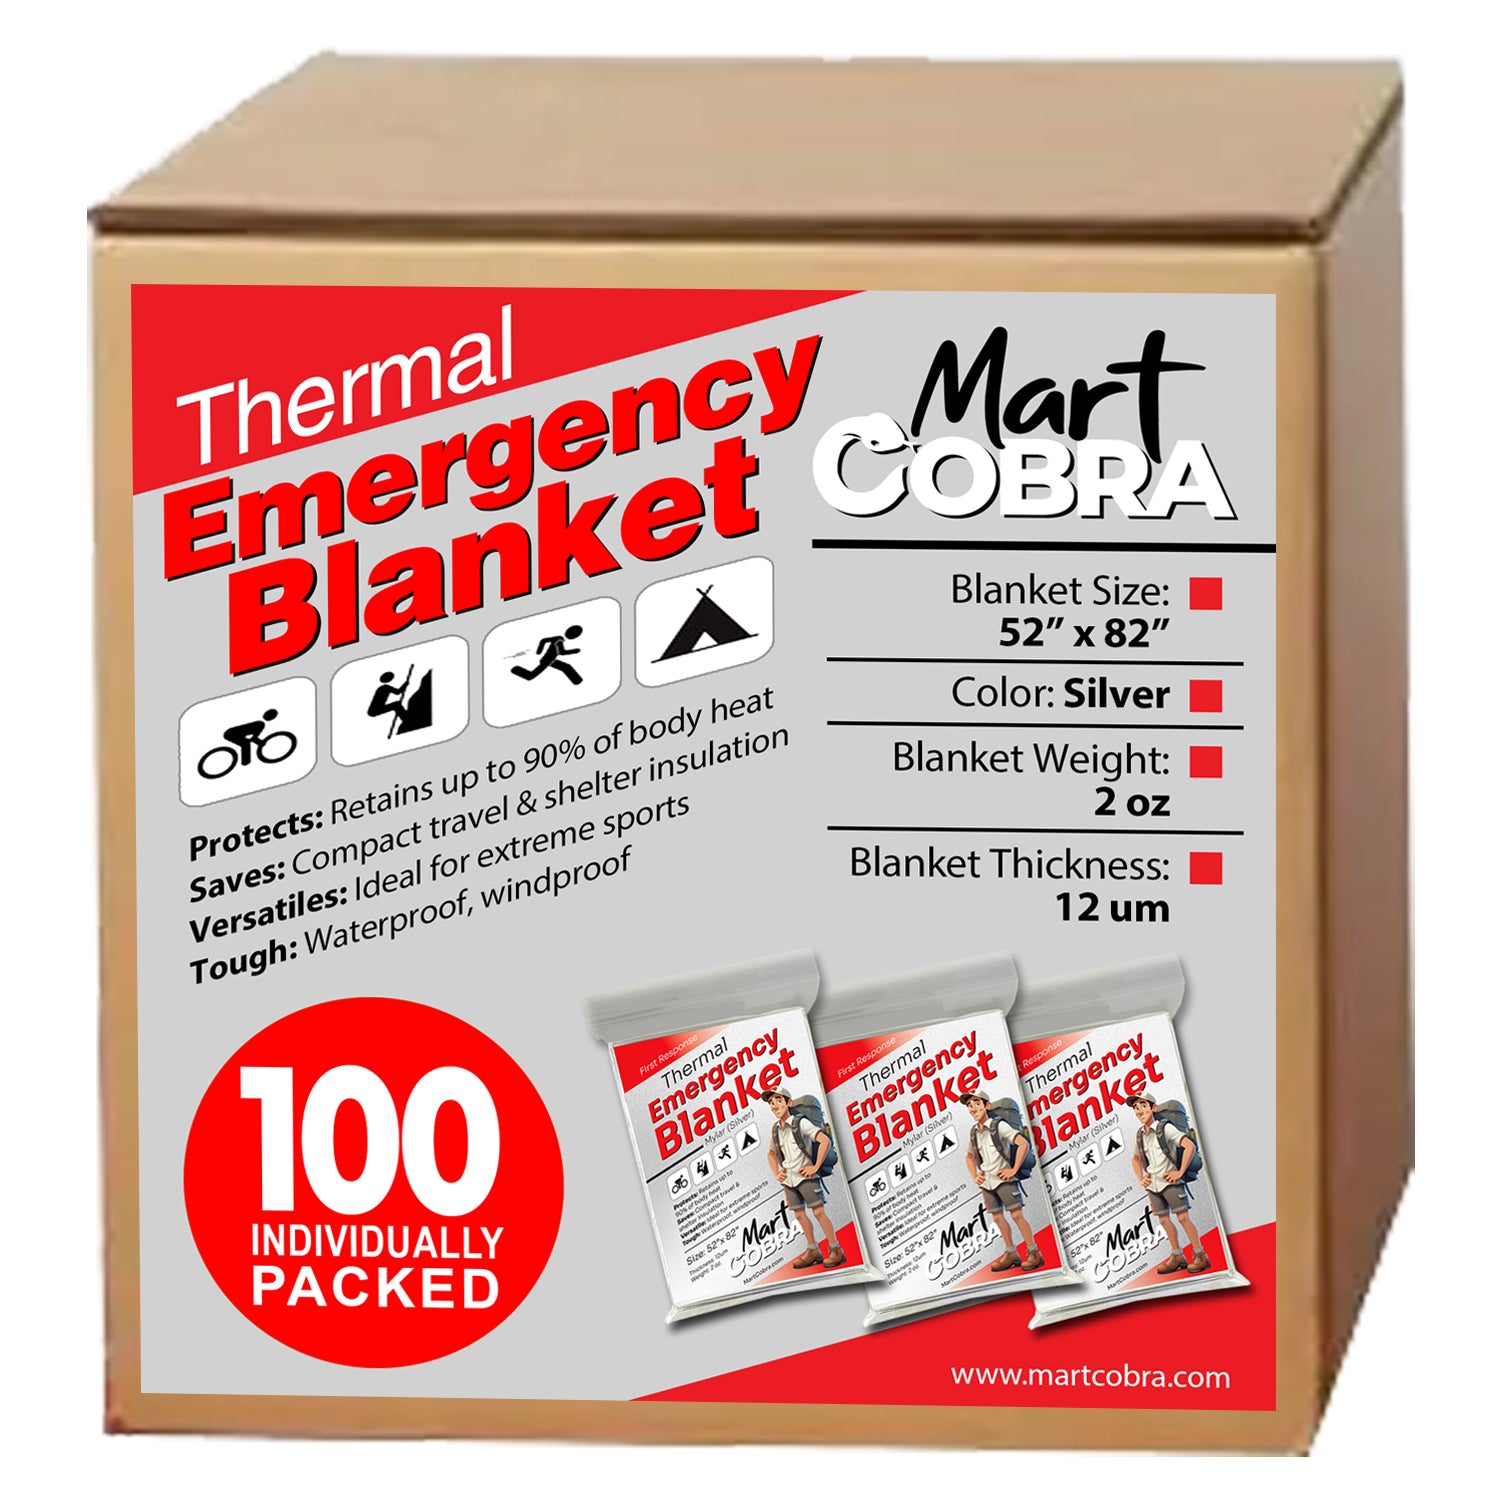 Thermal emergency blanket 100 packs